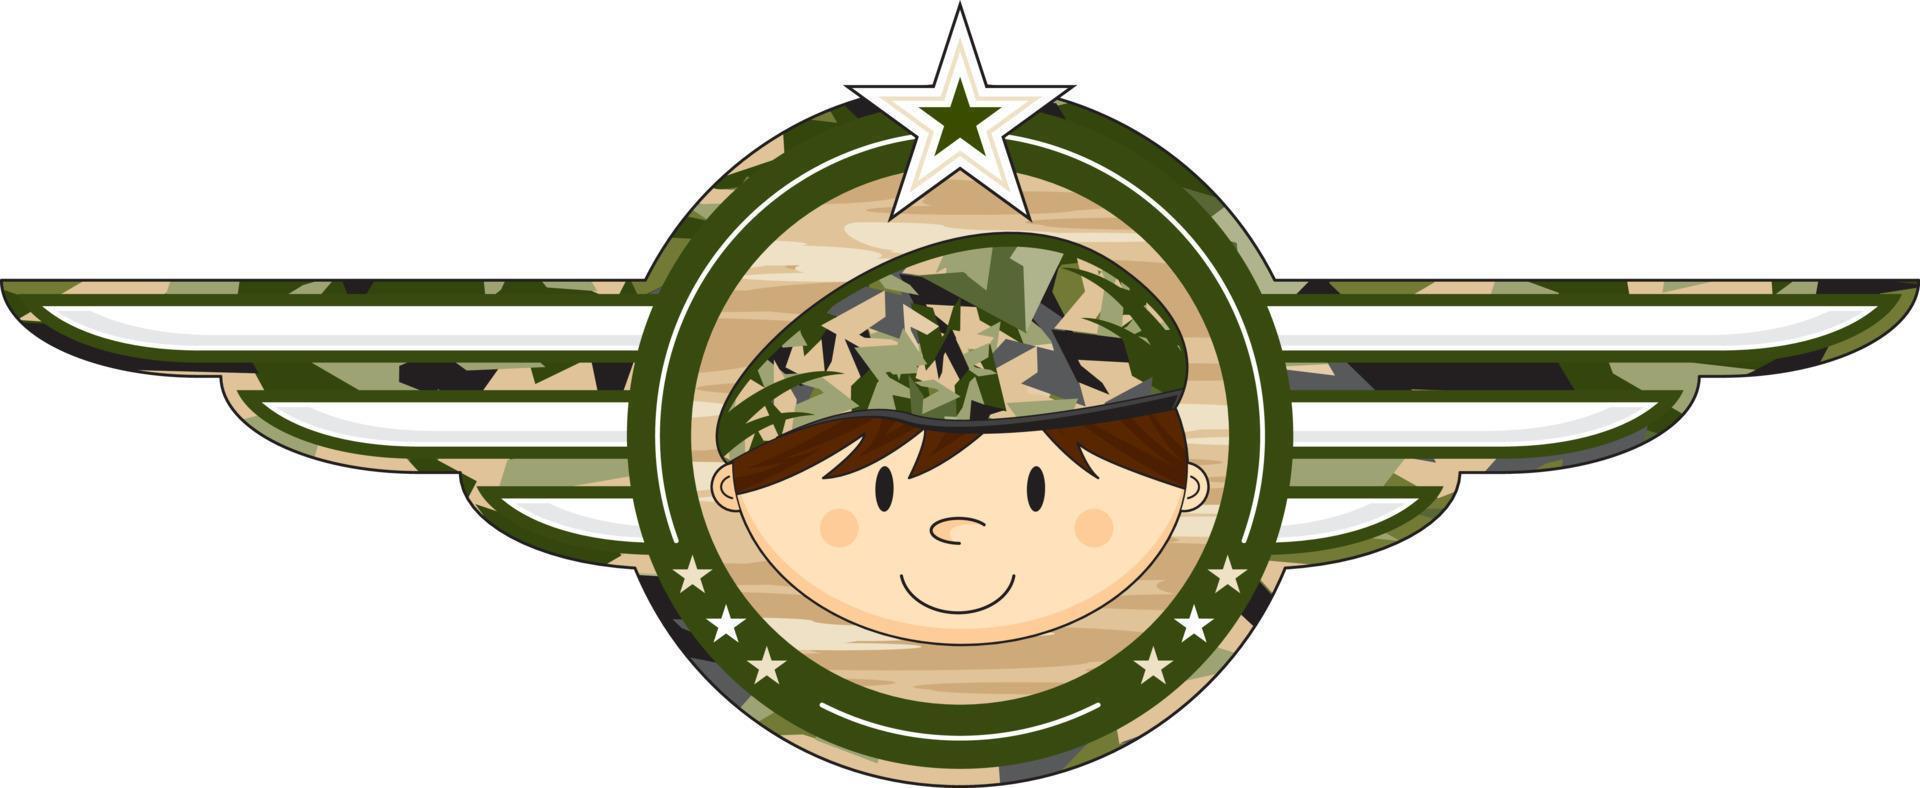 dessin animé armée soldat militaire histoire illustration vecteur